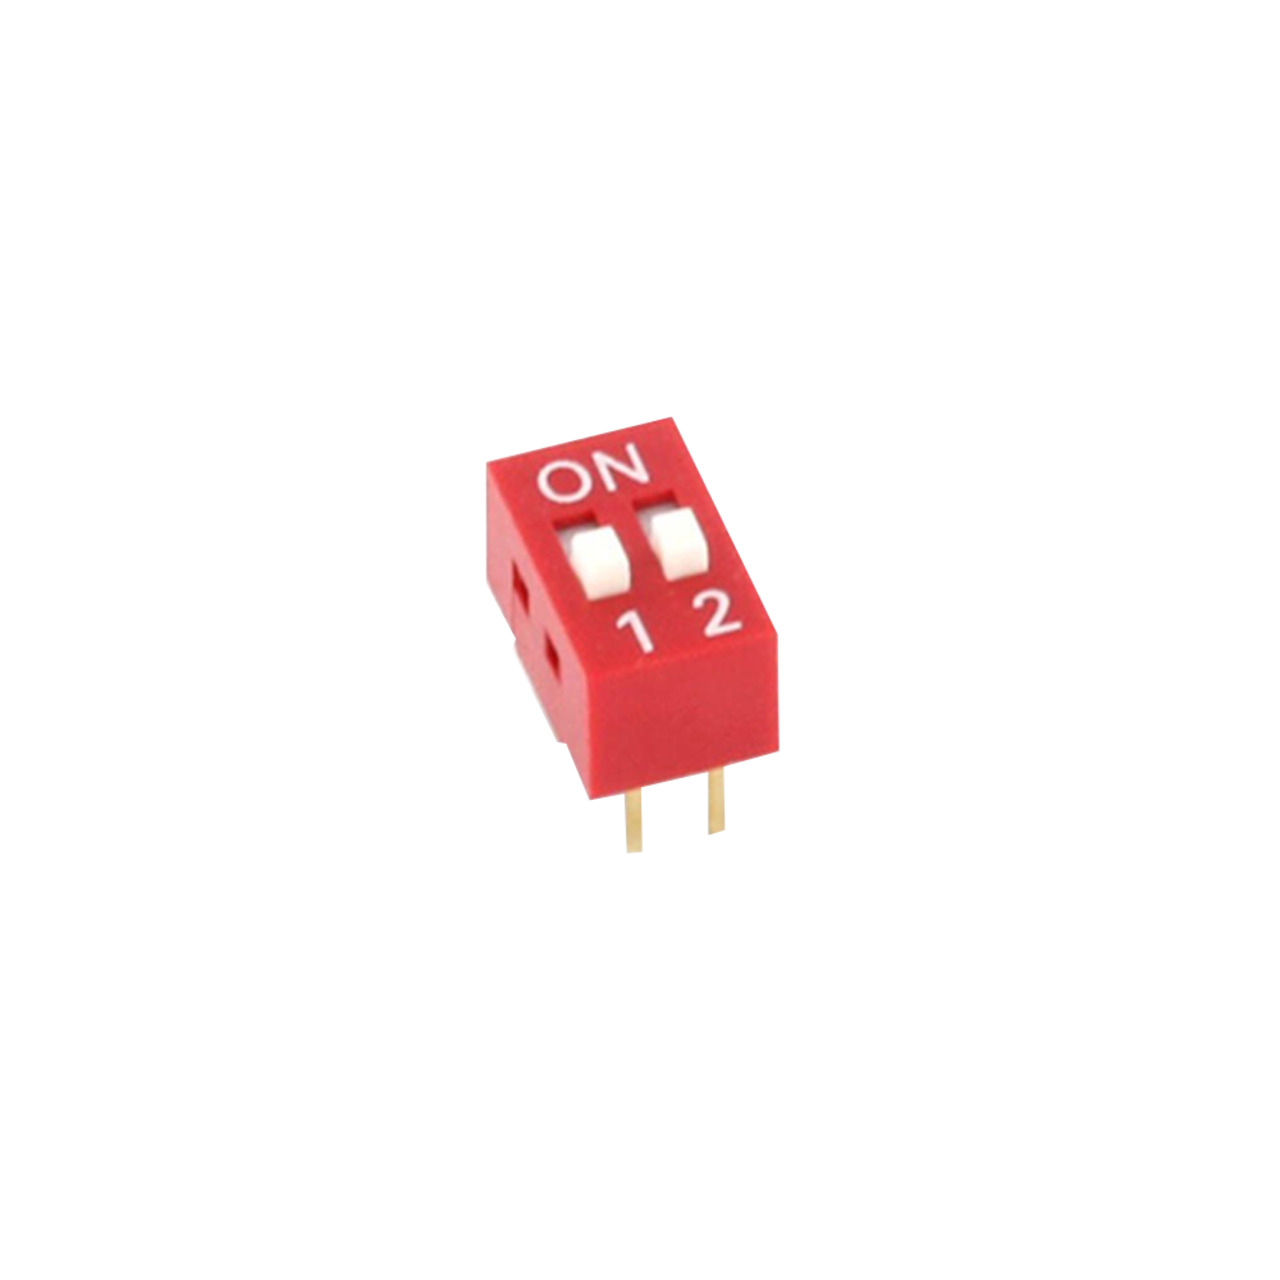 DIP-Schalter RM2-54 2-pol unter Komponenten